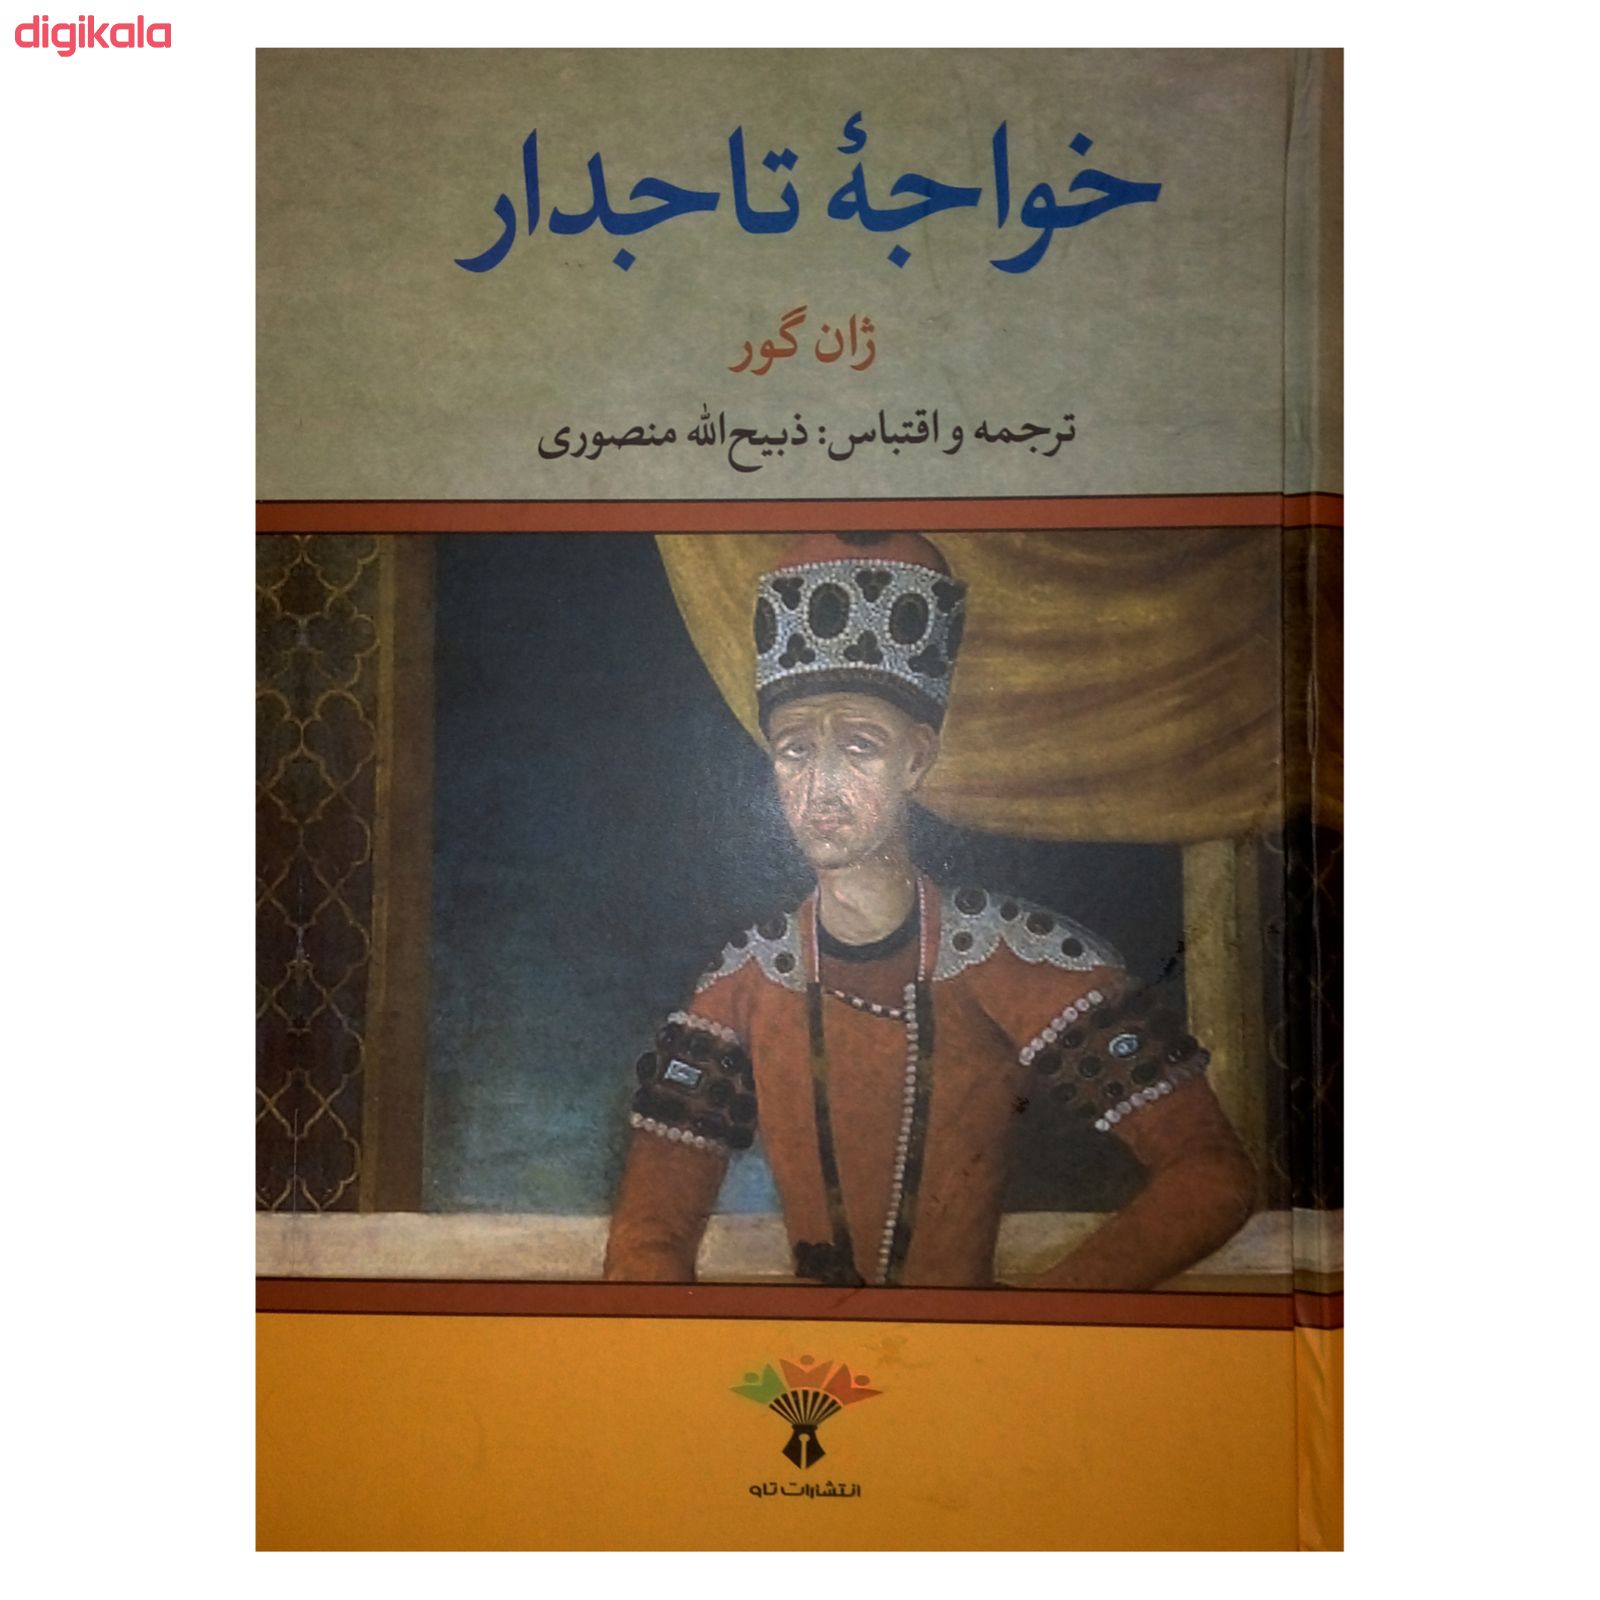  خرید اینترنتی با تخفیف ویژه کتاب خواجه تاجدار اثر ژان گور نشر تاو